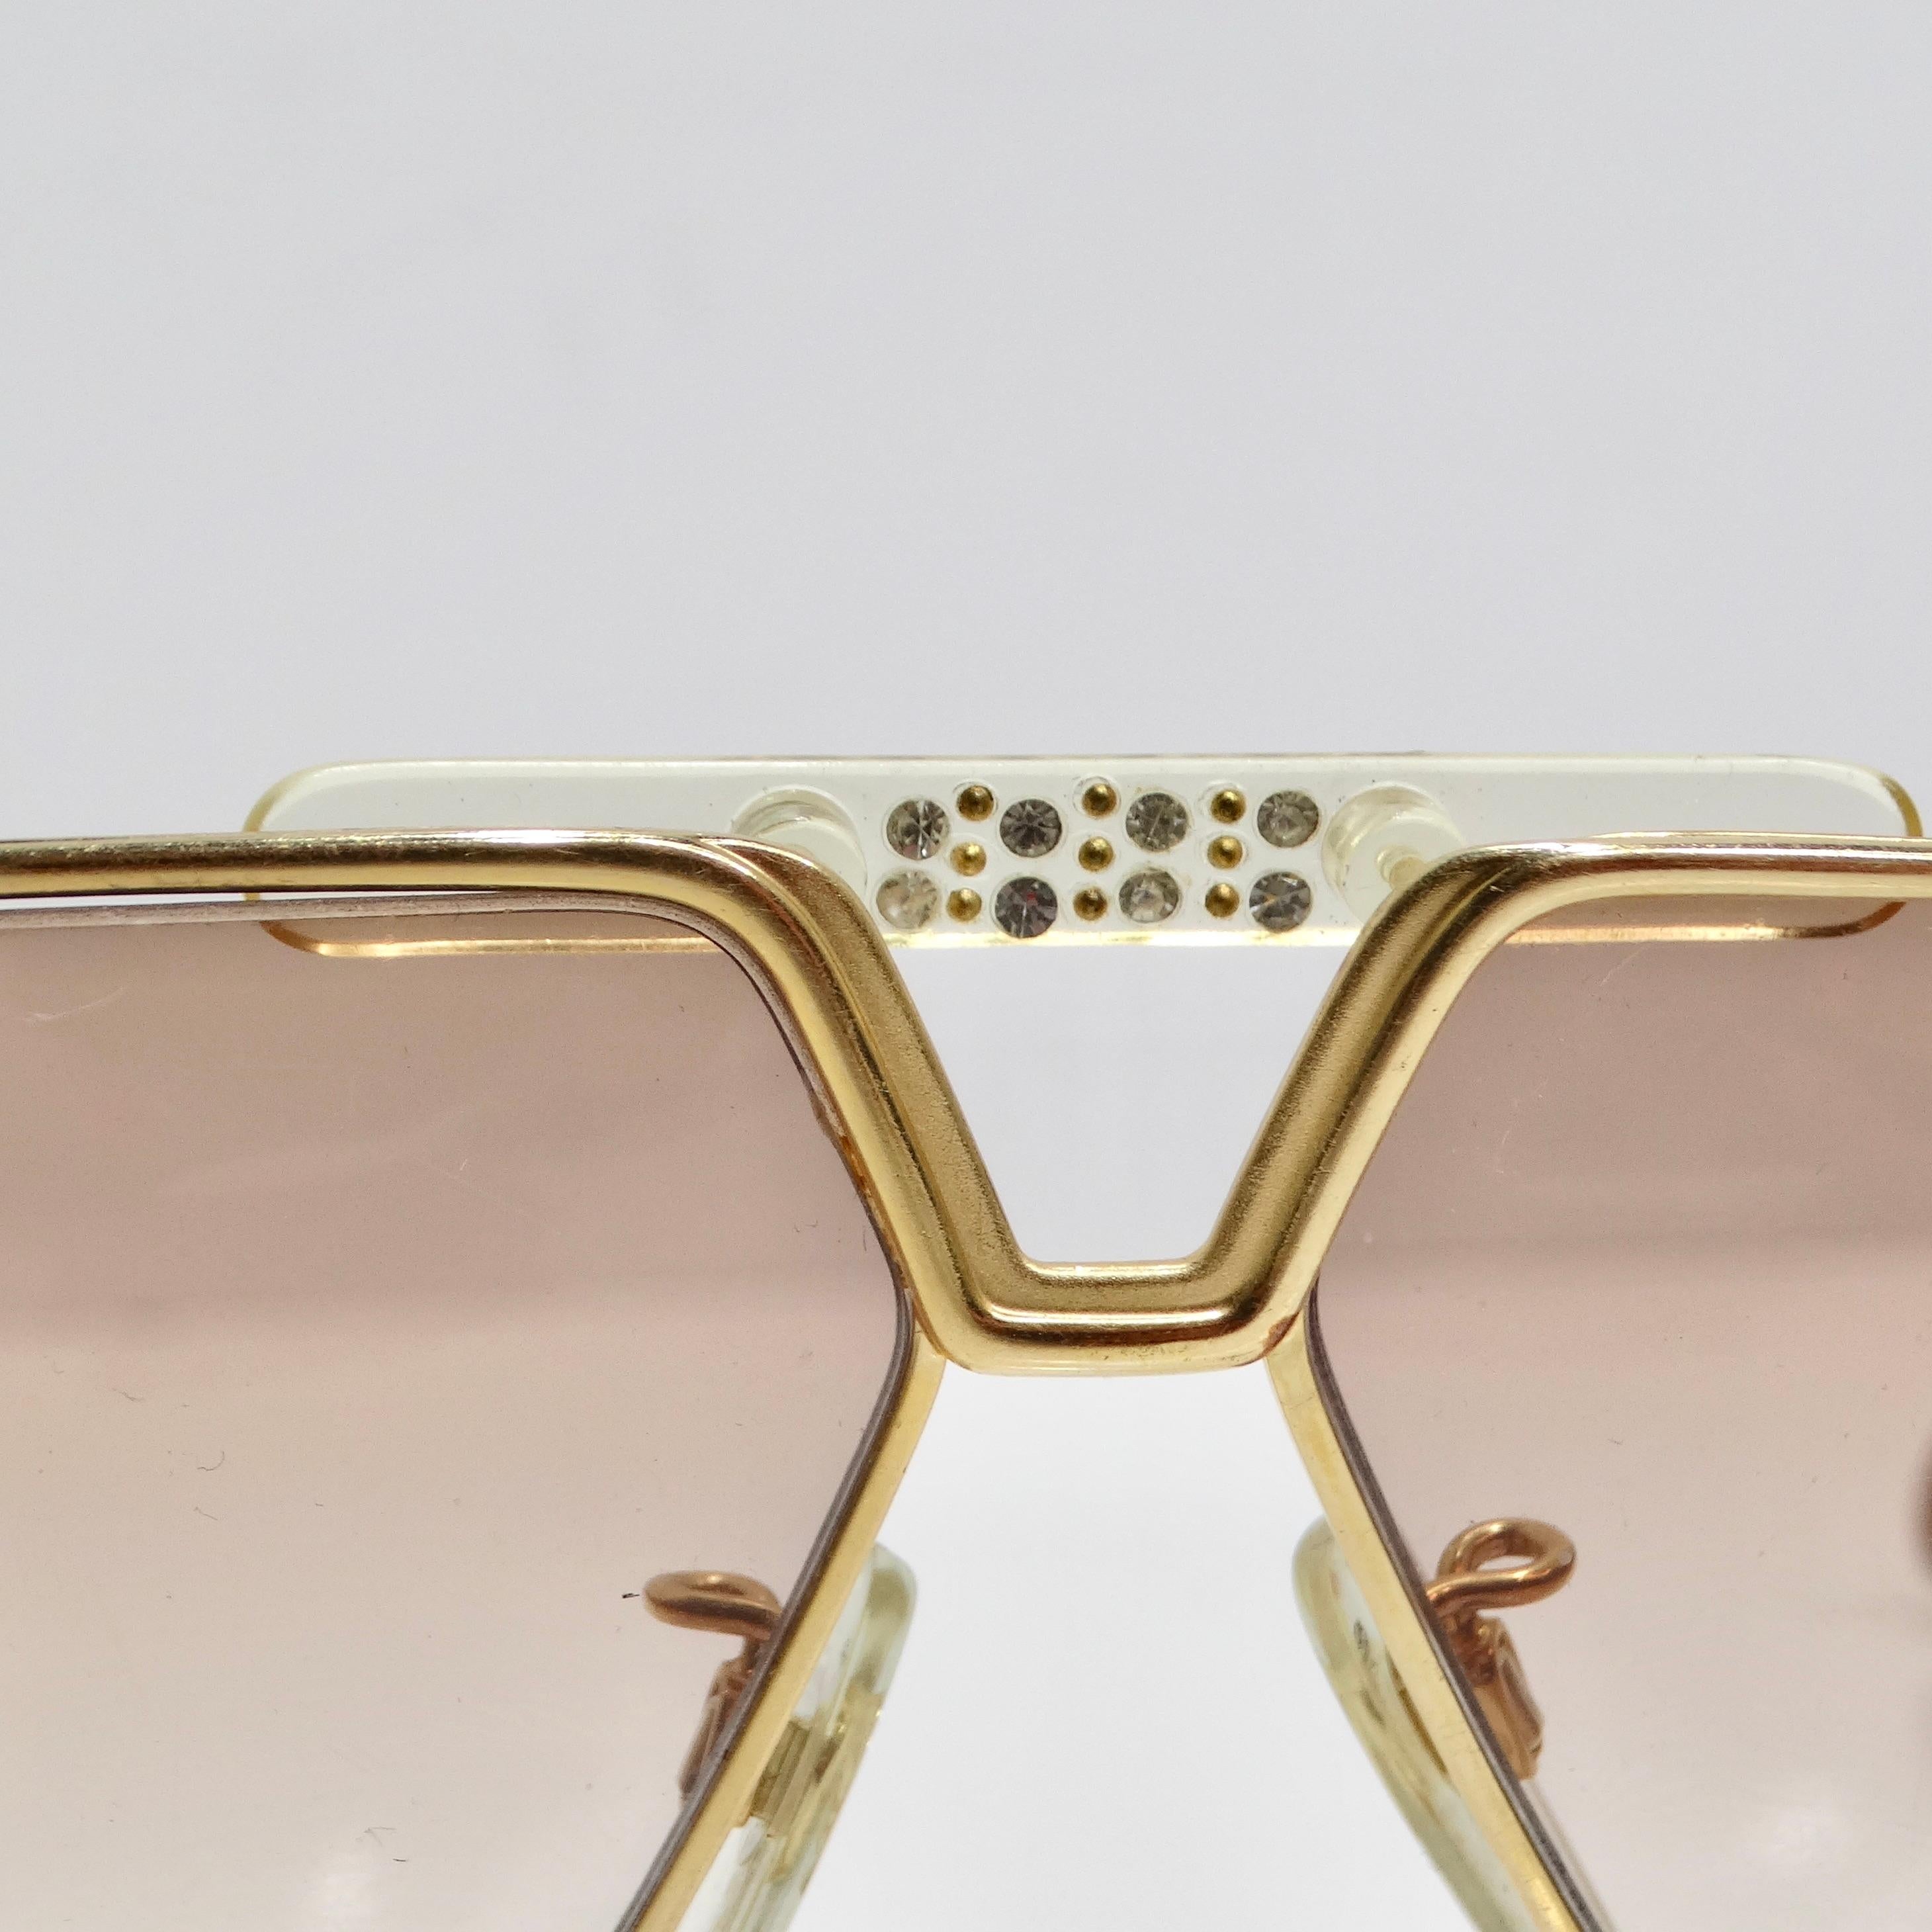 Die Cazal 1980s 951 Gold Tone Sunglasses ist ein ikonisches und aussagekräftiges Accessoire, das Luxus und Raffinesse ausstrahlt. Diese mit viel Liebe zum Detail gefertigte Sonnenbrille besticht durch ein zeitloses Design und eine vielseitige